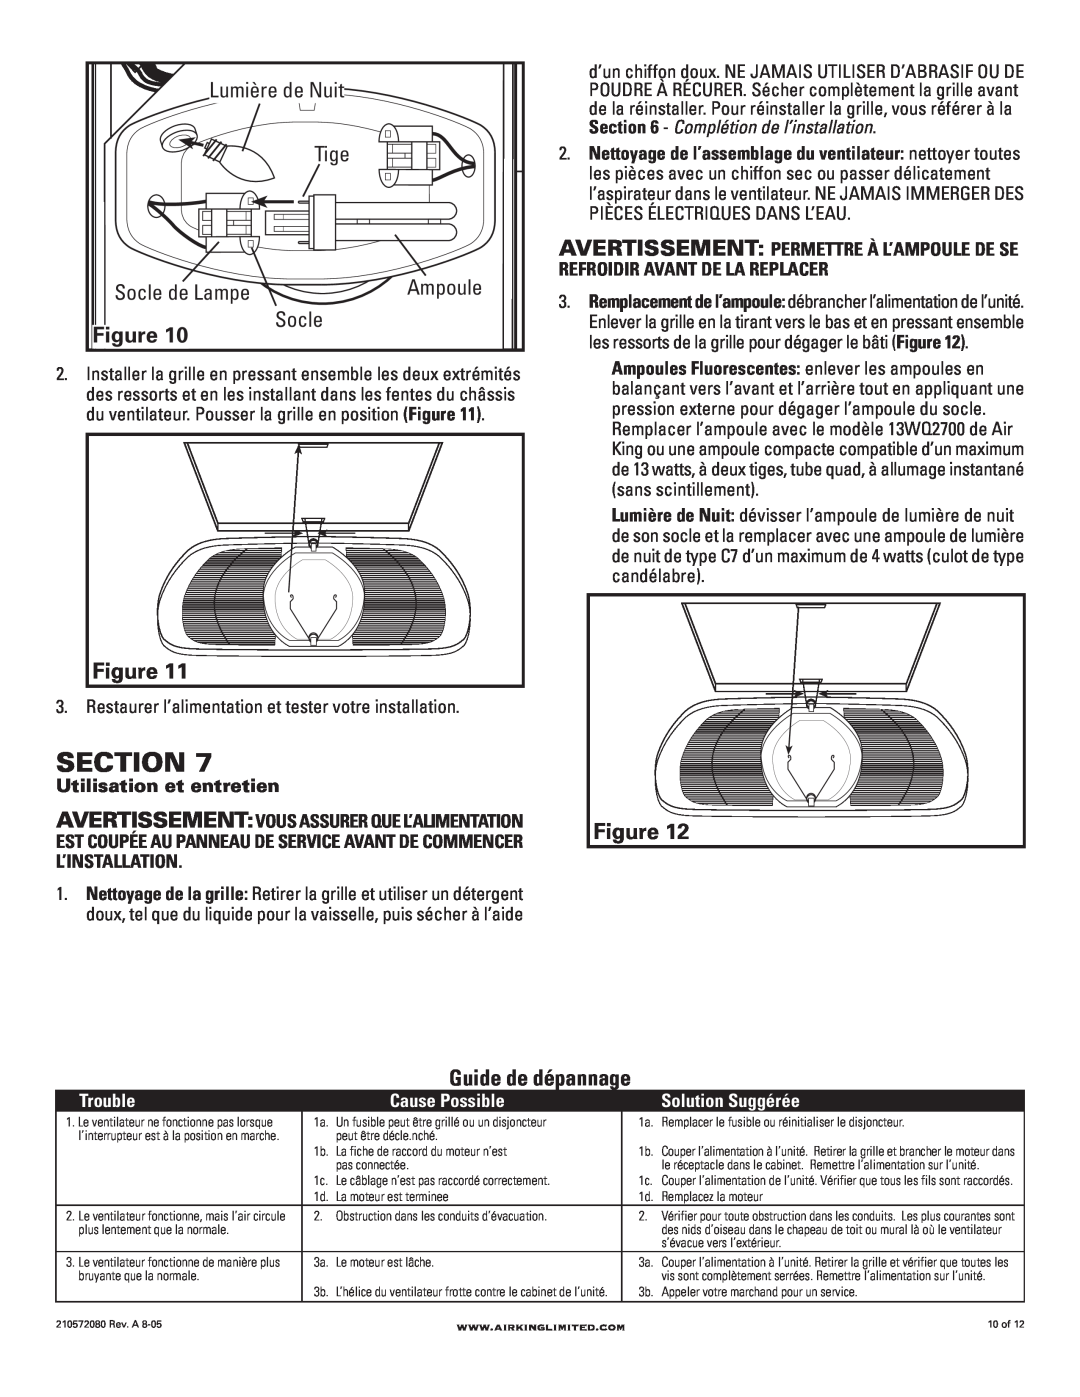 Air King AK80LSL, AK100LSL manual Guide de dépannage, Section, Ampoule, Utilisation et entretien, Trouble, Cause Possible 